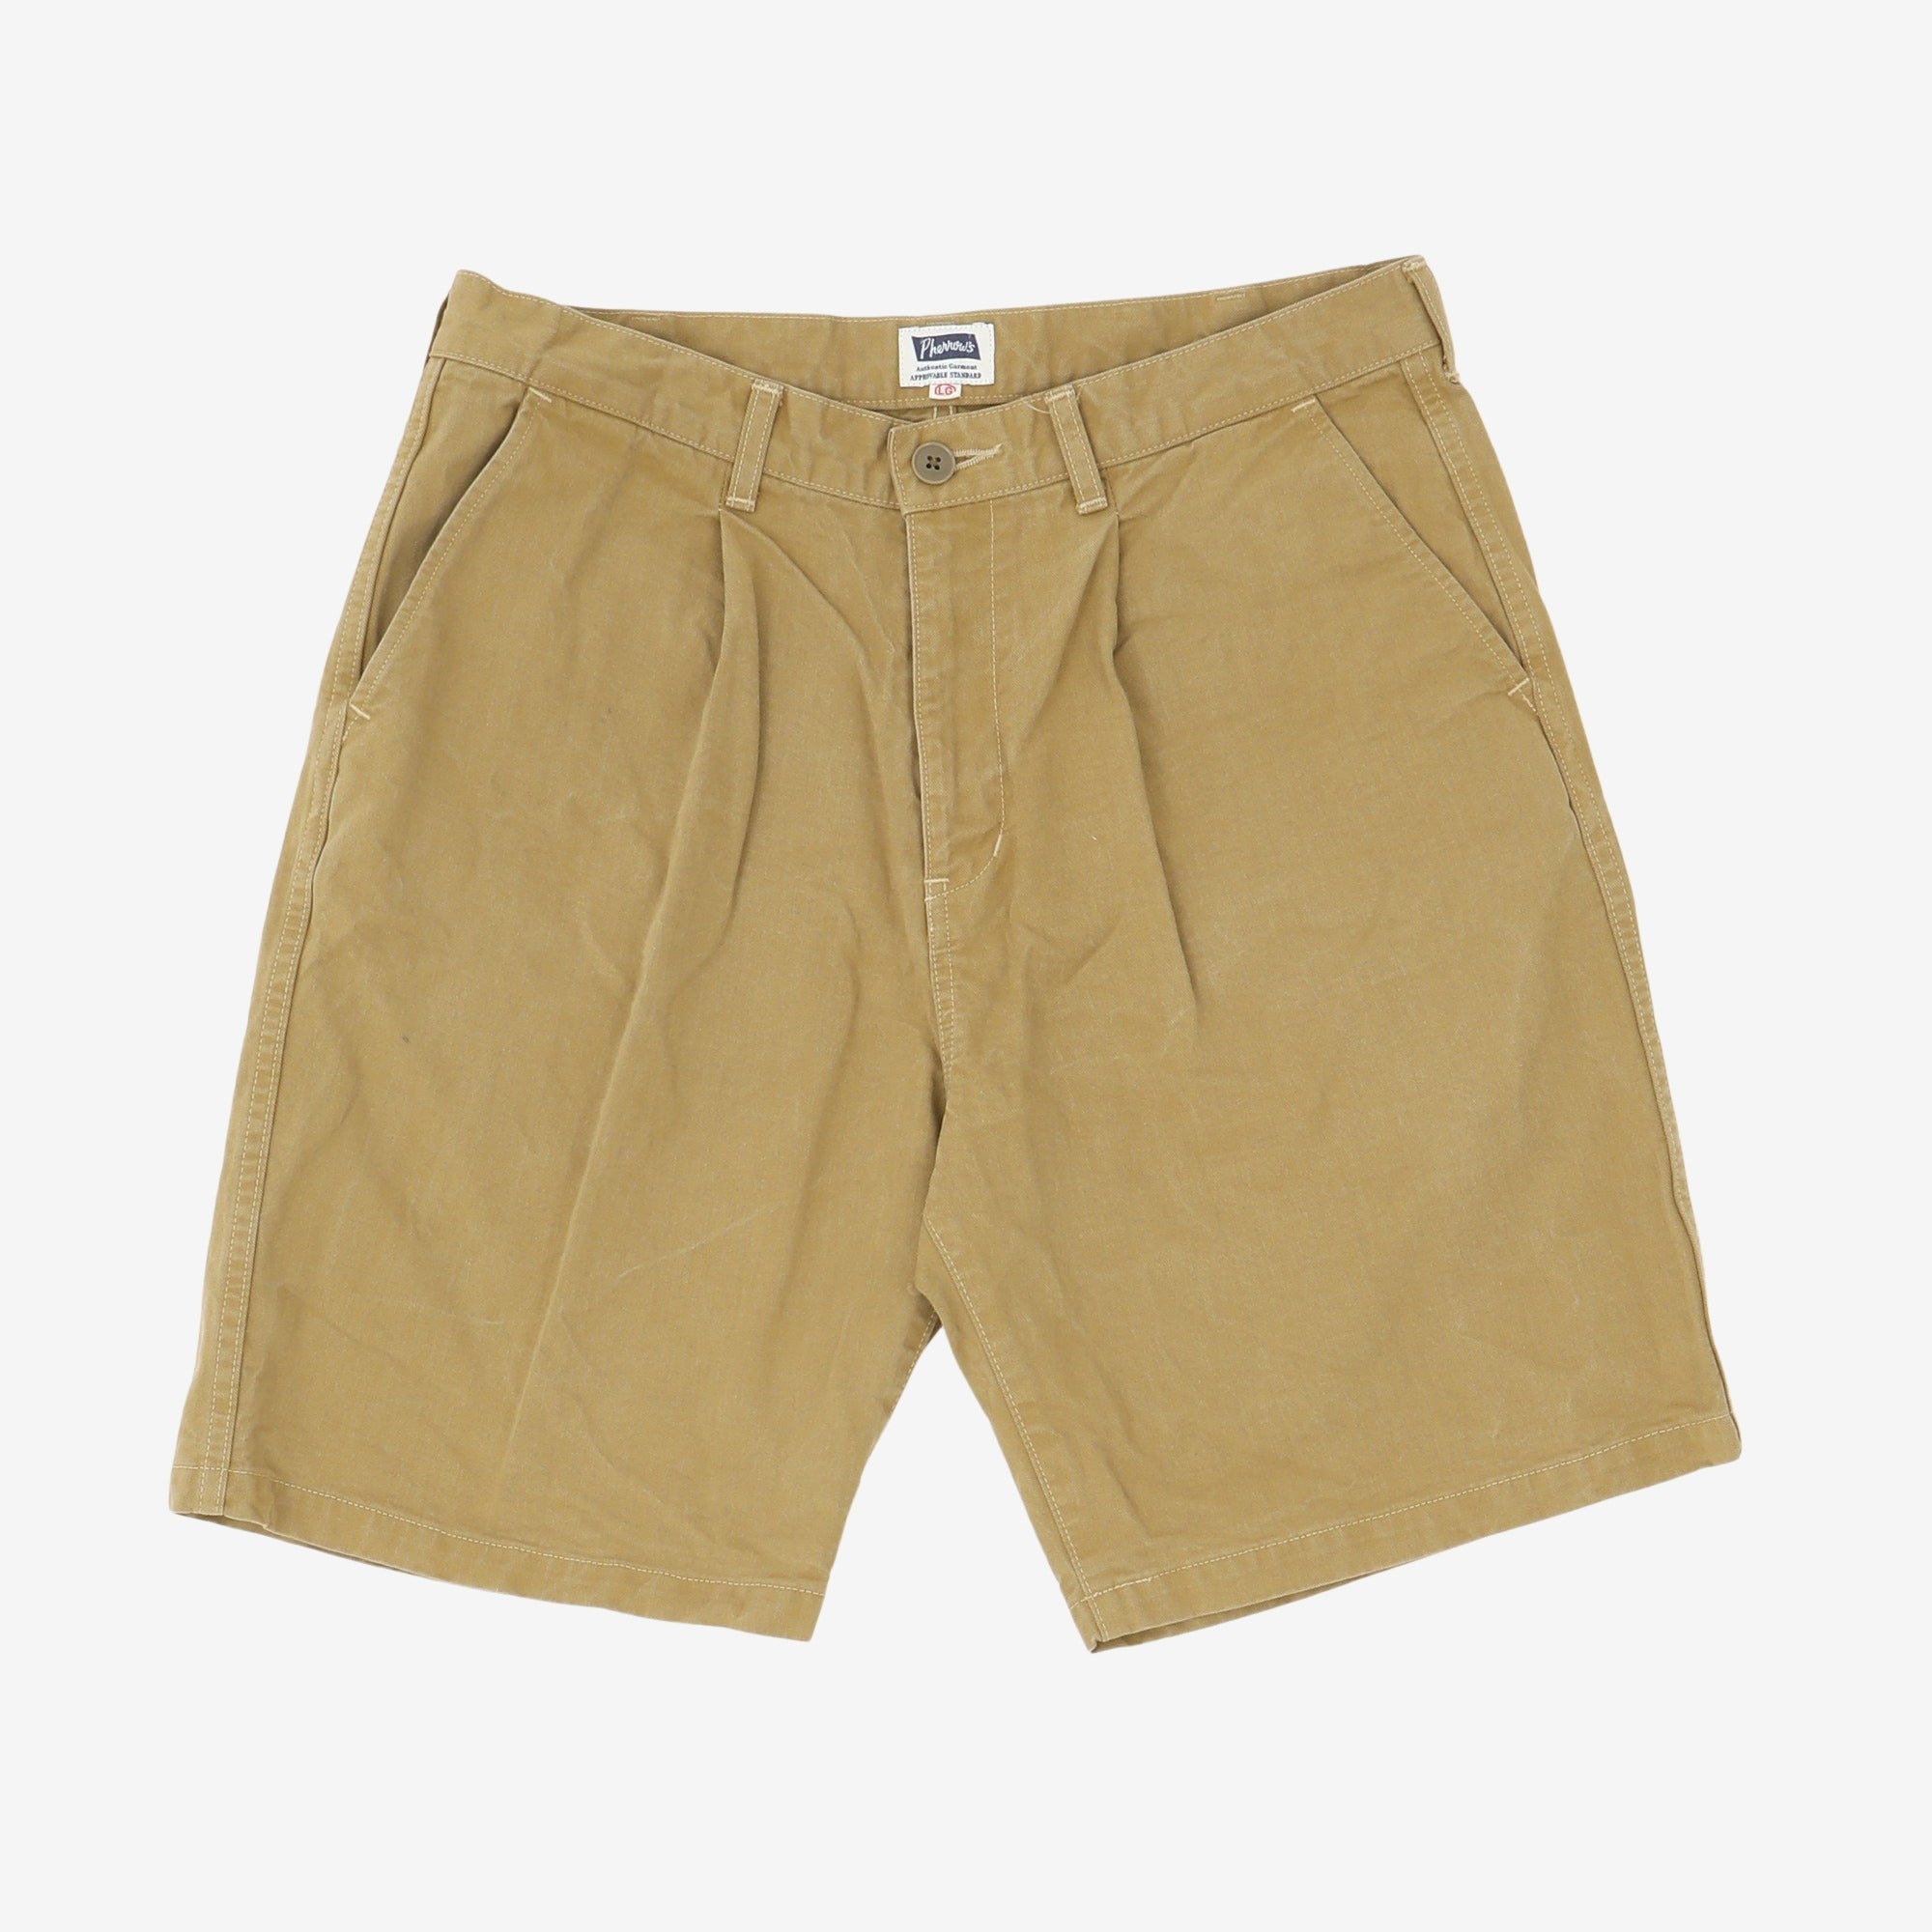 Shorts (32W)